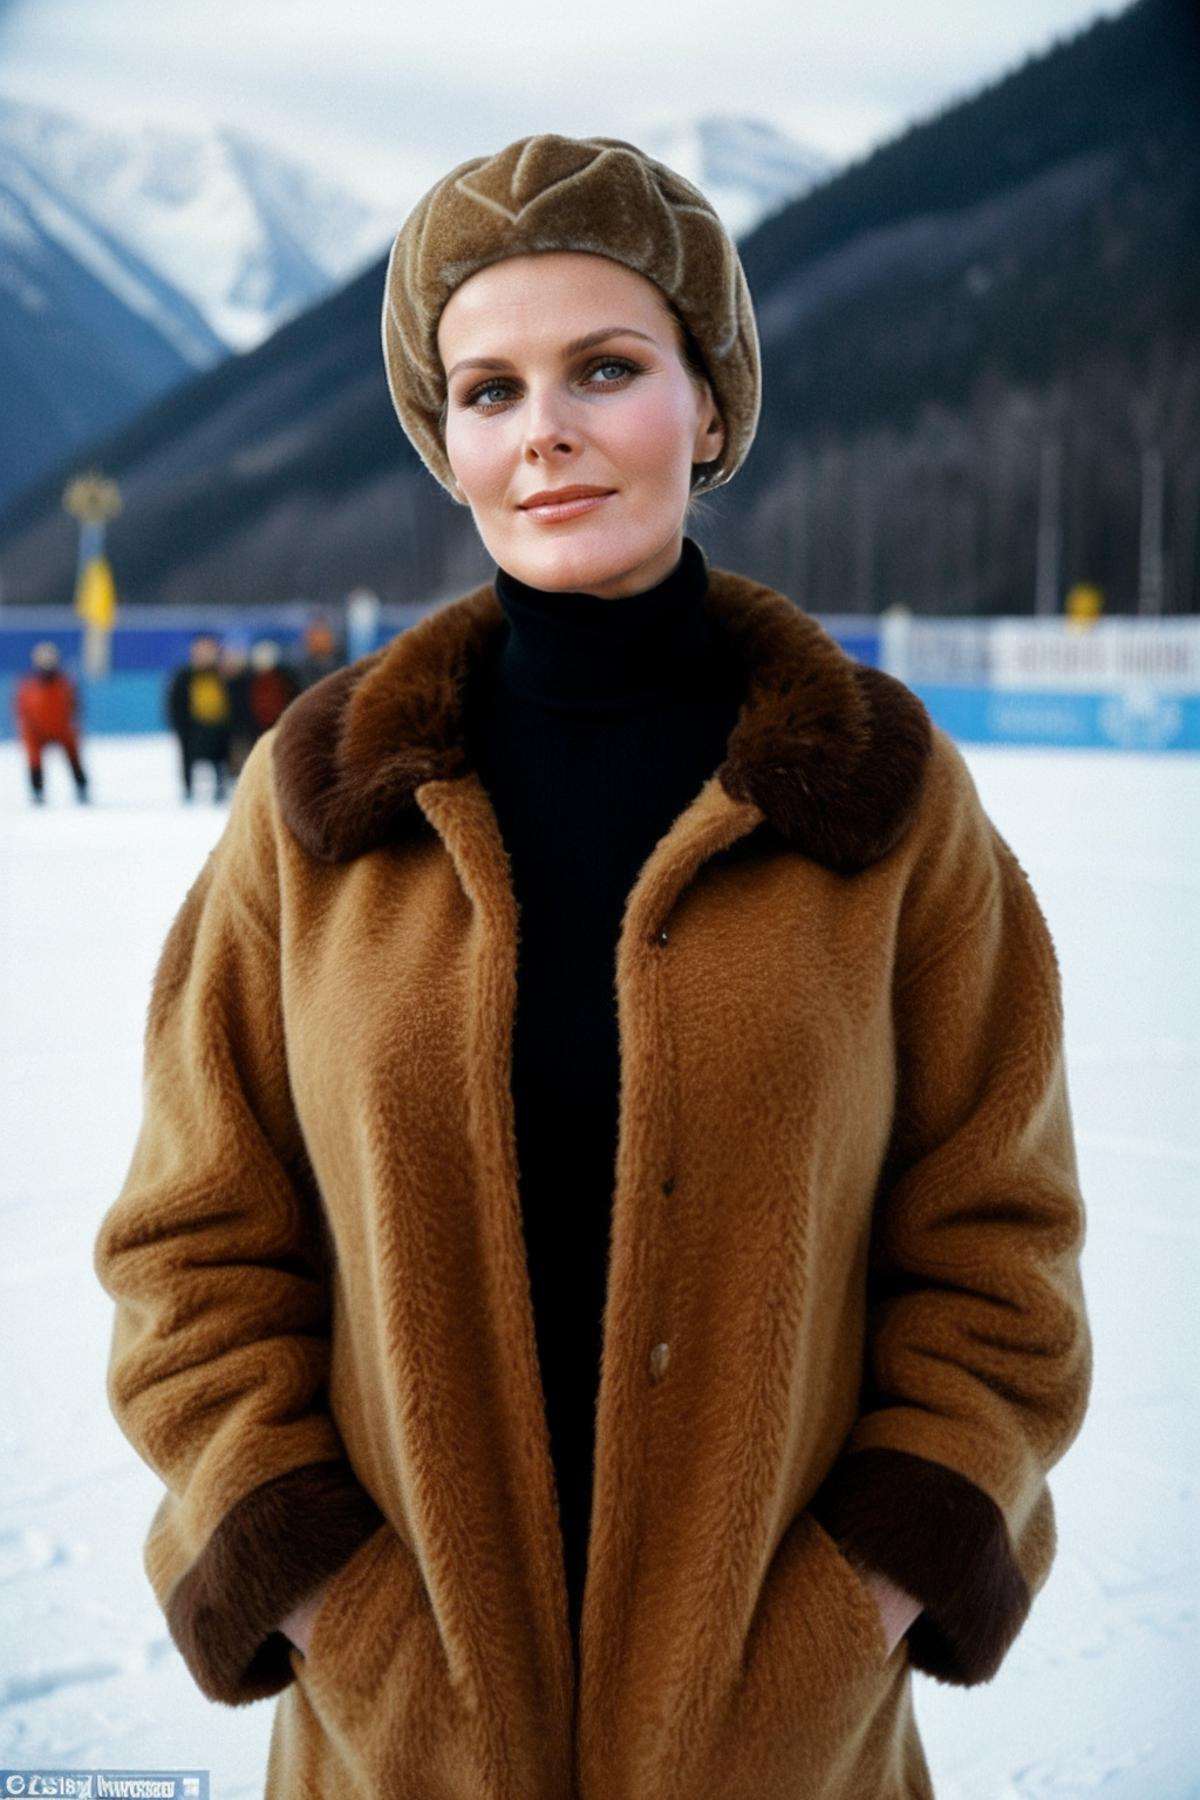 Bo Derek - Actress 1970's Era image by civitai730